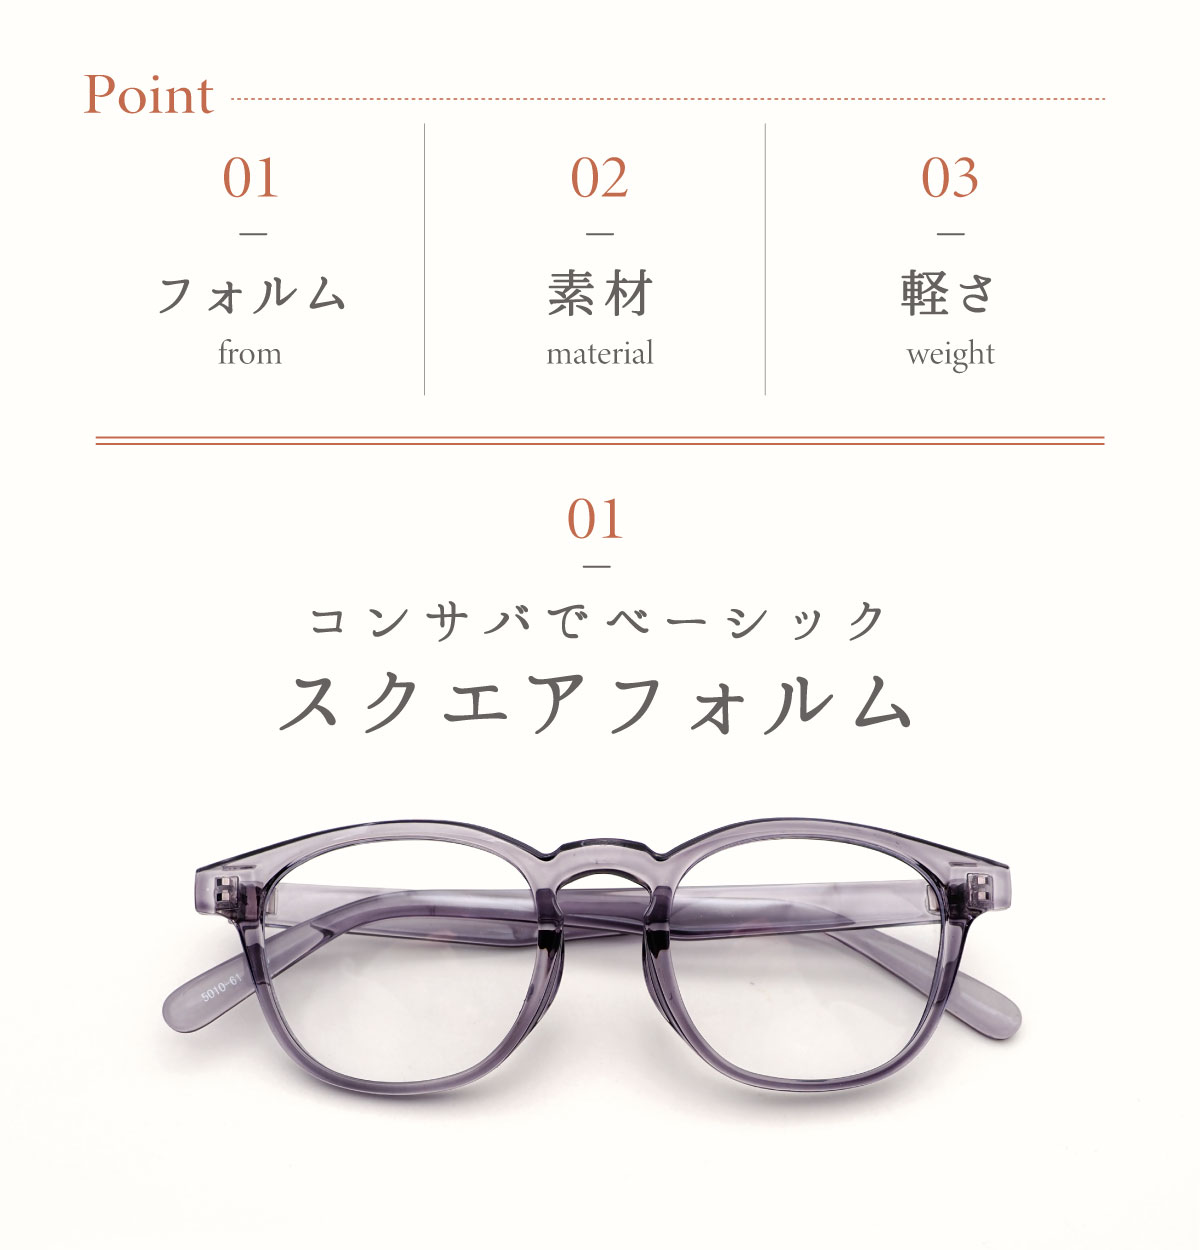 サングラス レディース おしゃれ 伊達メガネ uvカット 紫外線 対策 スクエア かわいい 可愛い 眼鏡  :fi5010:オプティックストアグラスガーデン 通販 